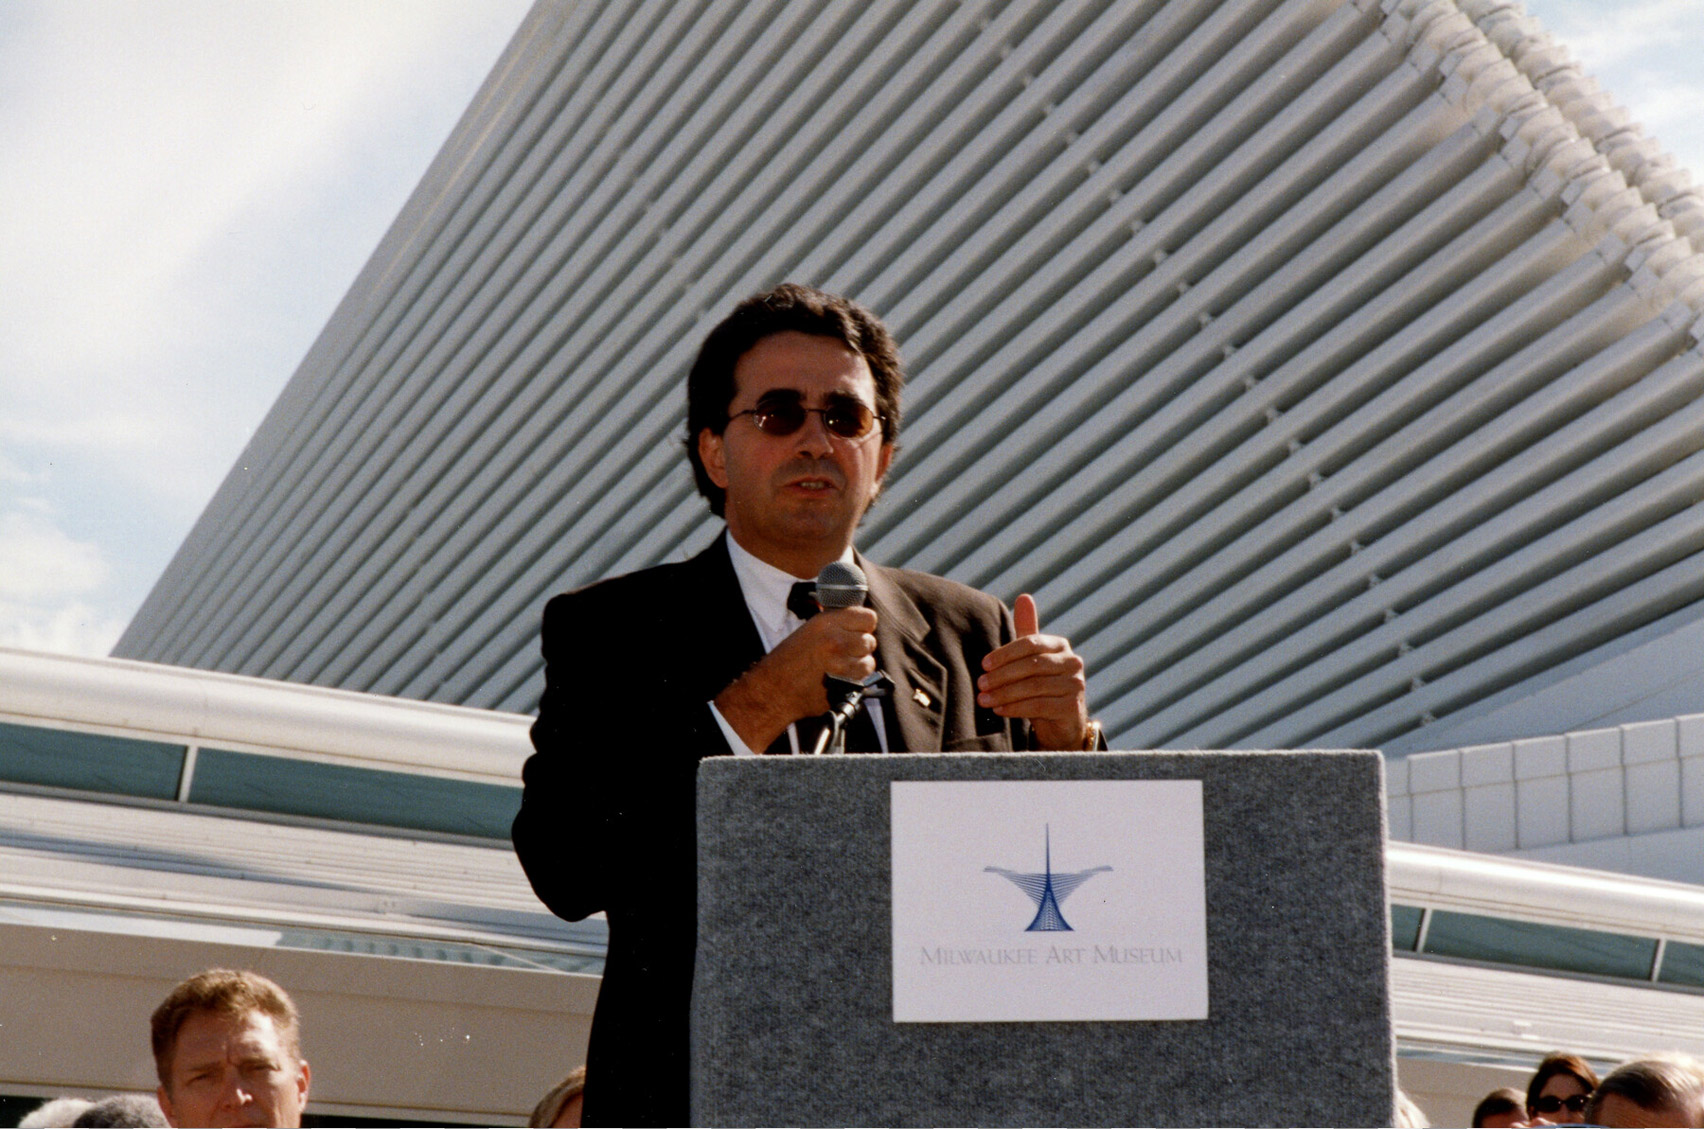 Santiago Calatrava speaking at MAM opening